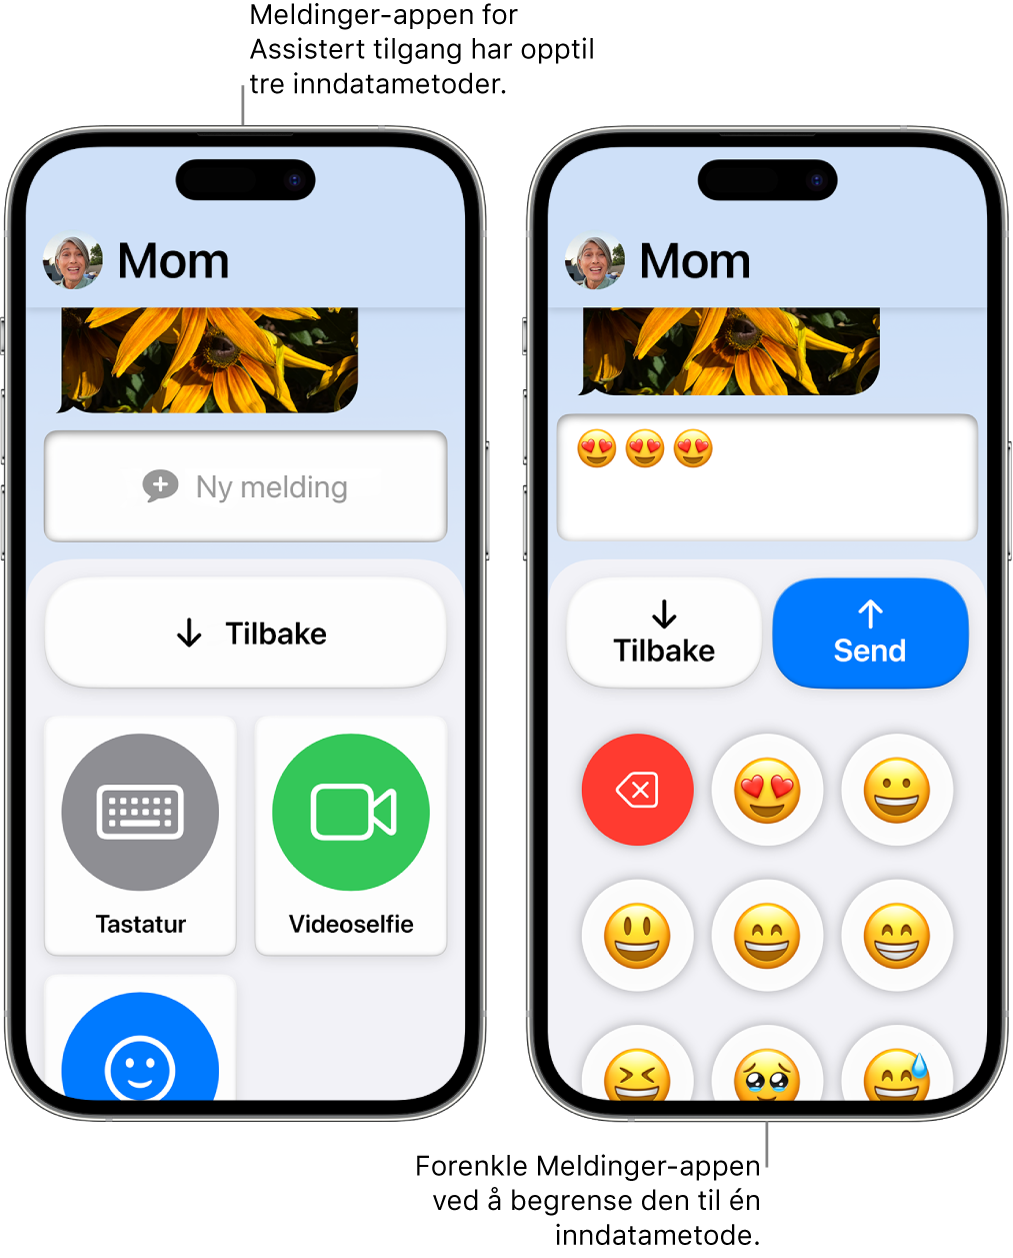 To iPhoner i Assistert tilgang. Den ene iPhonen viser Meldinger-appen med kameramoduser som brukeren kan velge mellom, som Tastatur eller Videoselfie. Den andre viser en melding som sendes ved hjelp av et tastatur med kun emojier.